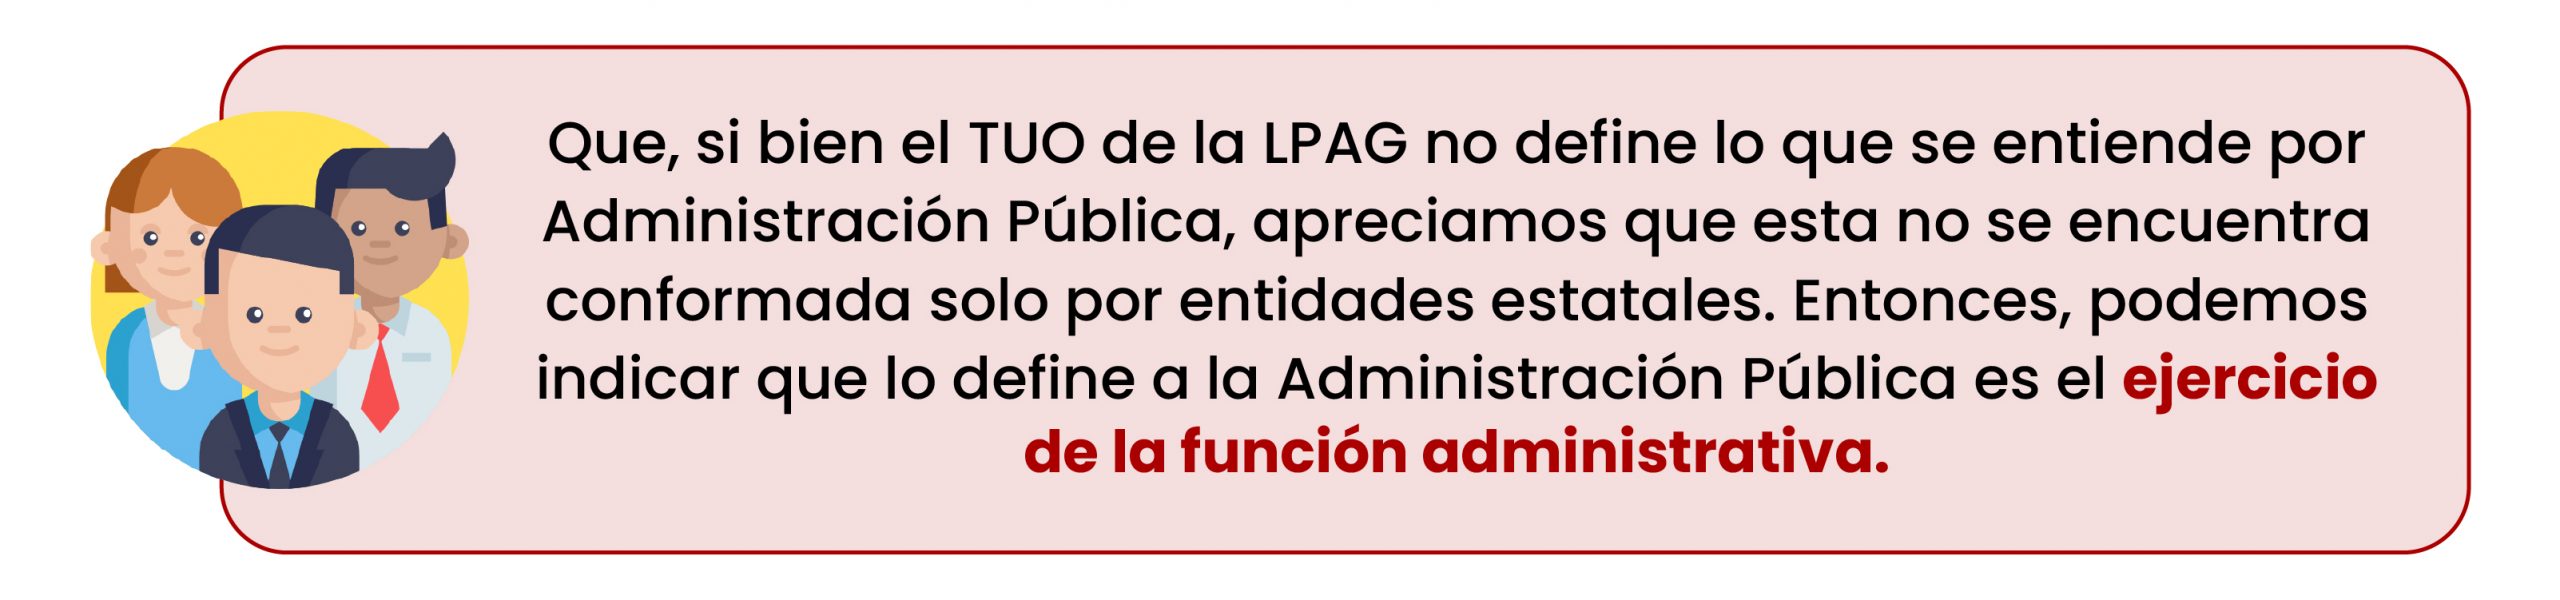 Administracion Publica